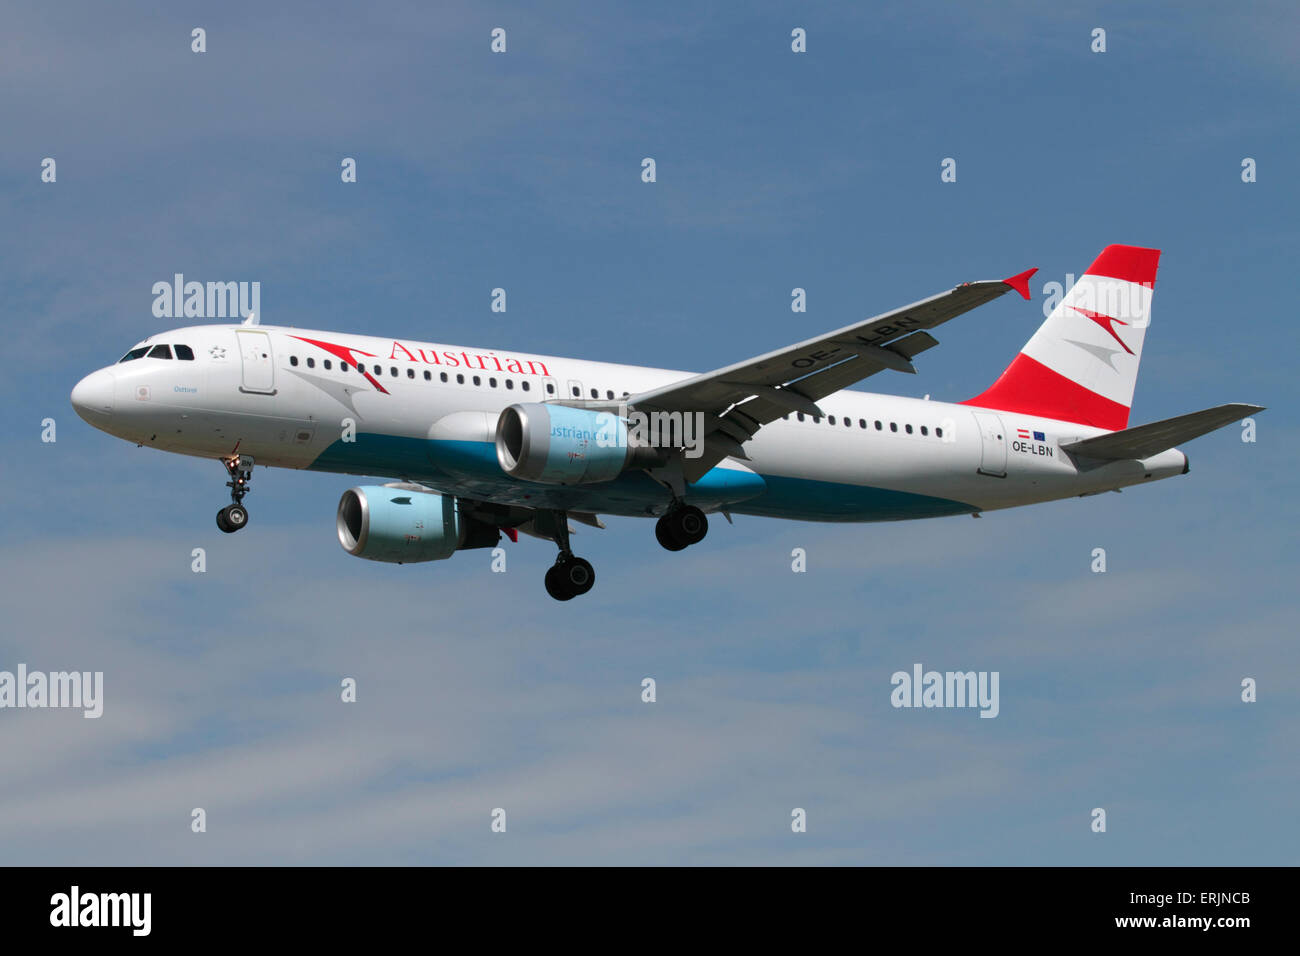 Austrian Airlines Airbus A320 aereo di linea sulla rotta di avvicinamento. Aviazione civile e commerciale viaggi dell'aria. Foto Stock